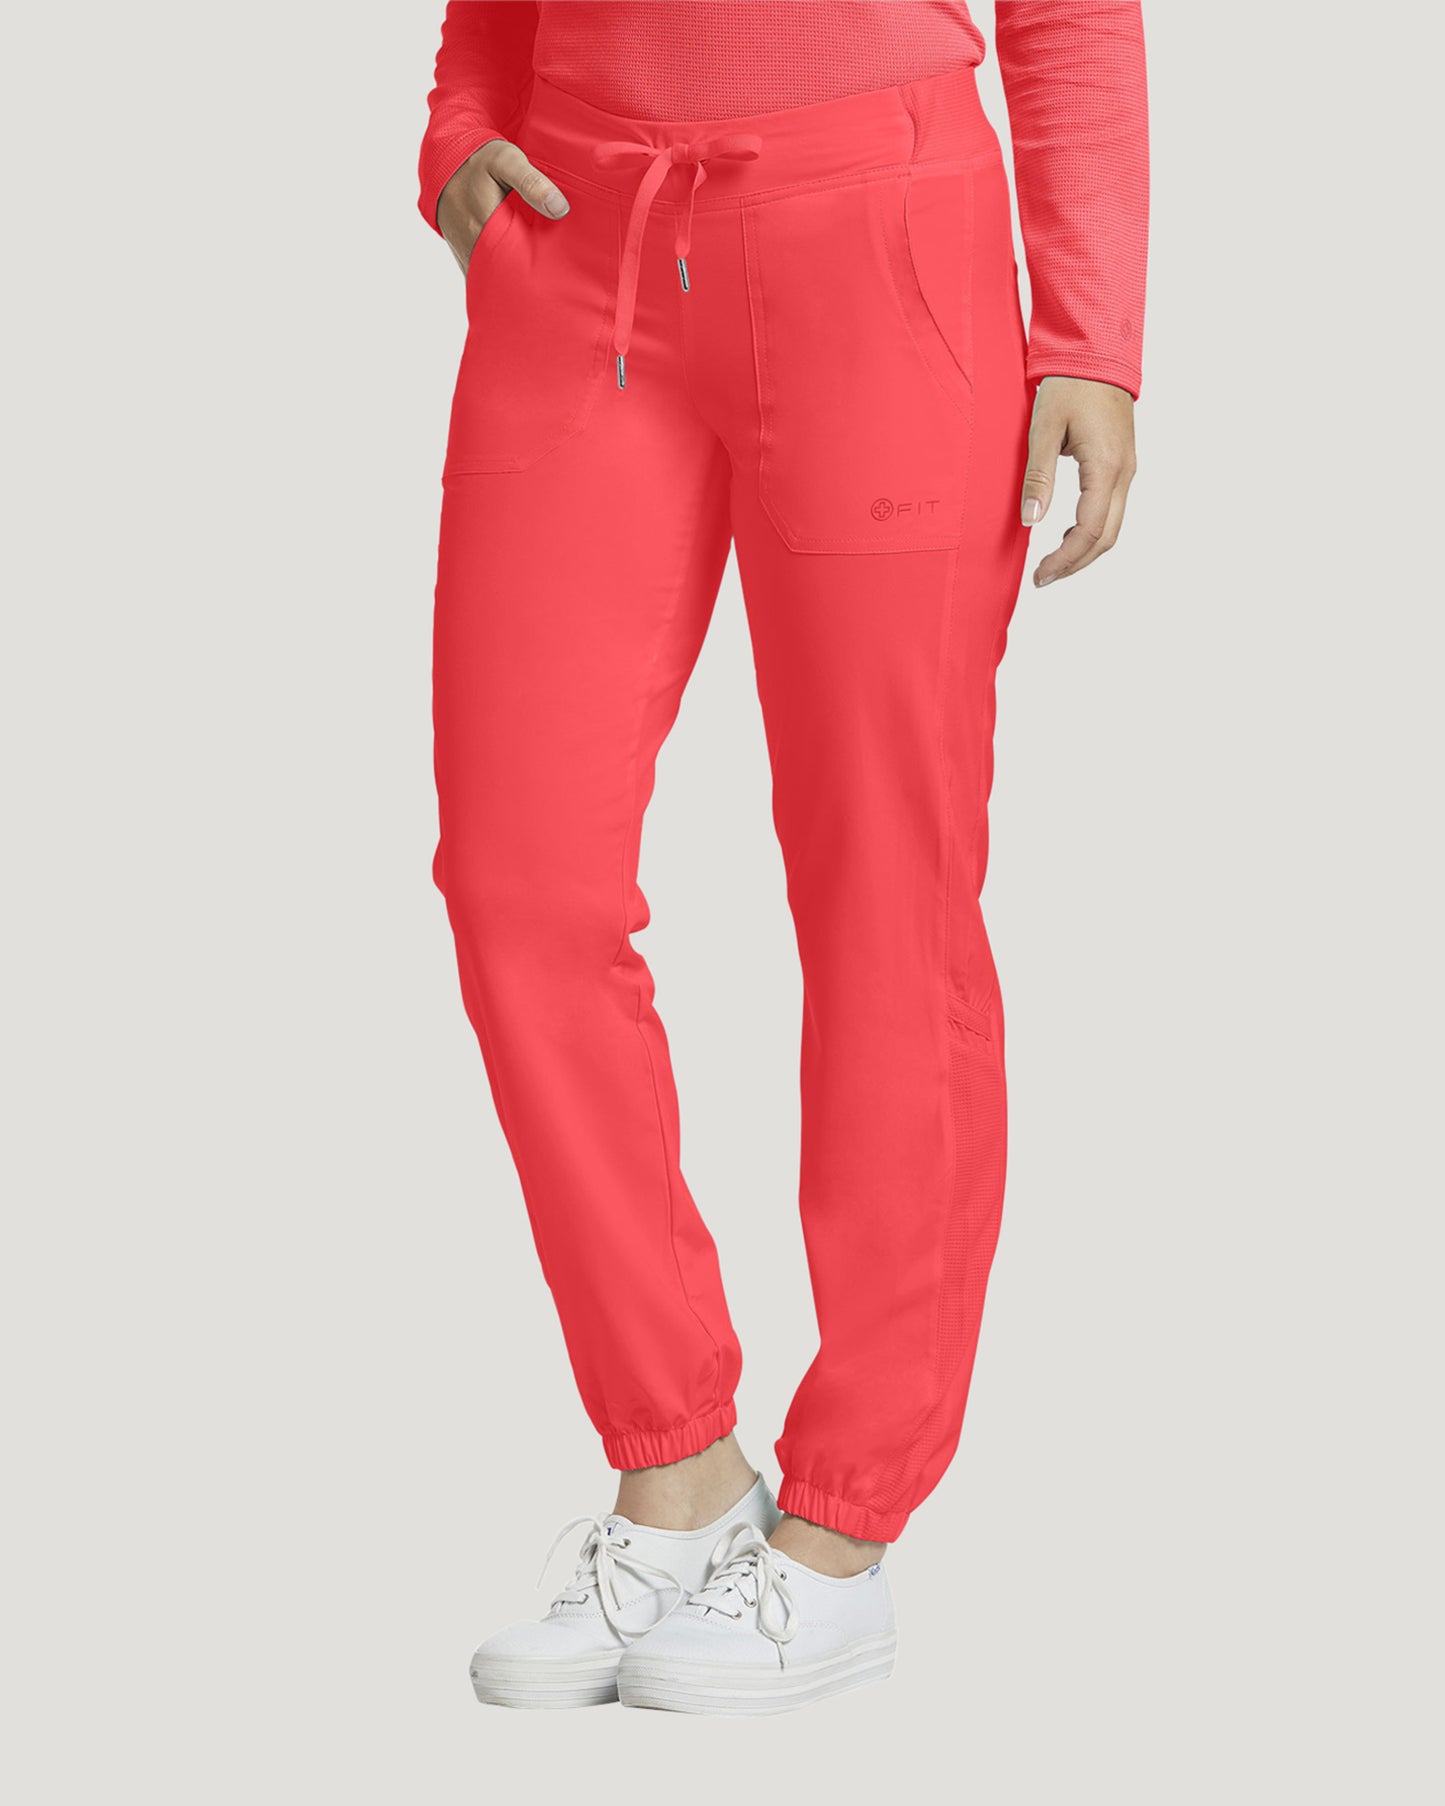 399P White Cross Fit Women's Petite Jogger pants